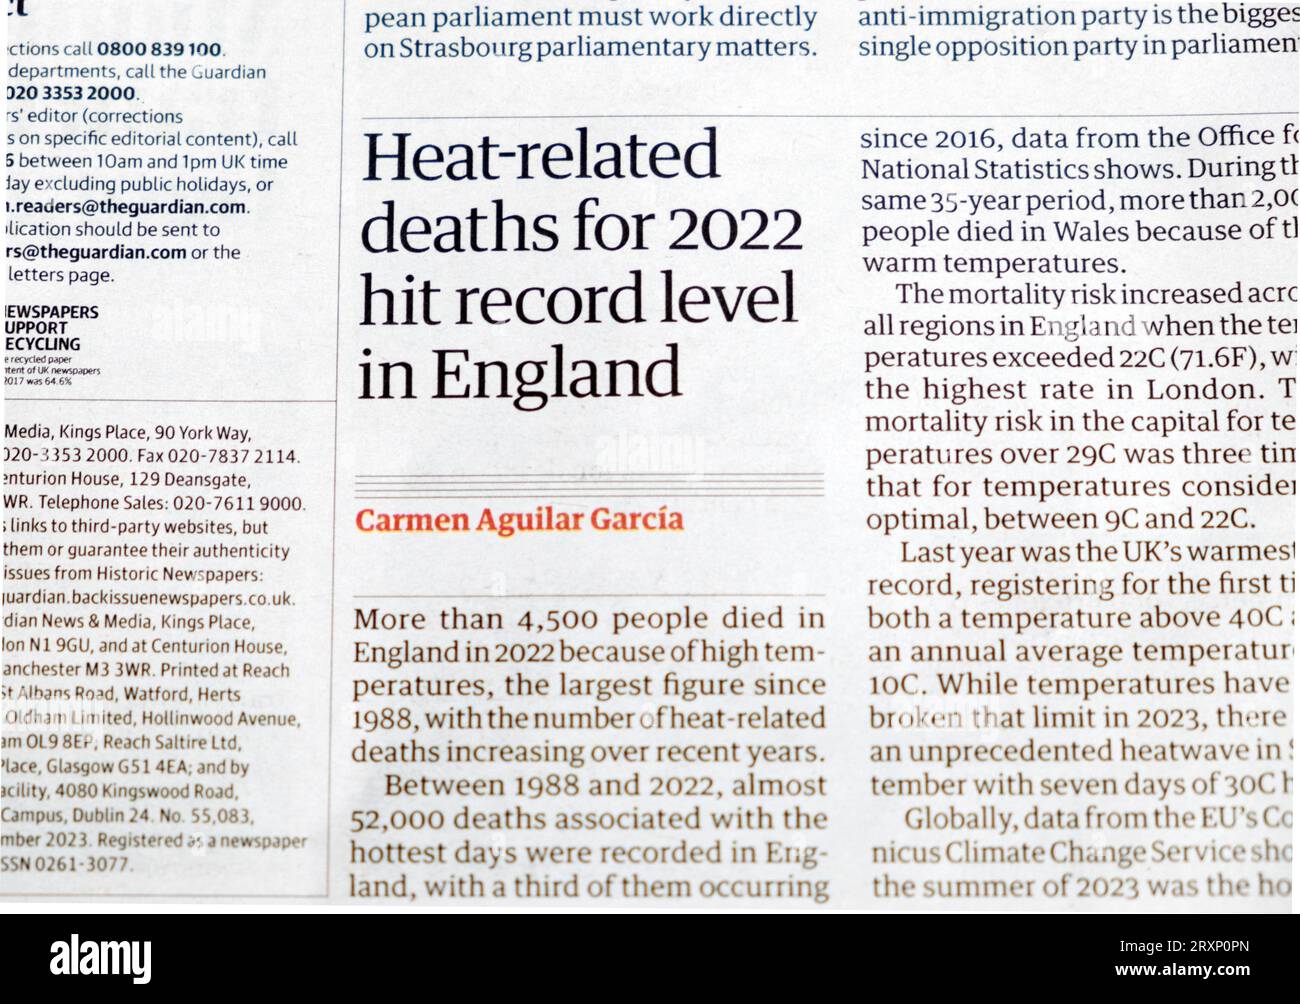 "I decessi legati al calore per il 2022 hanno raggiunto il livello record in Inghilterra" il quotidiano Guardian headline cutting clipping Climate Change articolo del 23 settembre 2023 Regno Unito Foto Stock